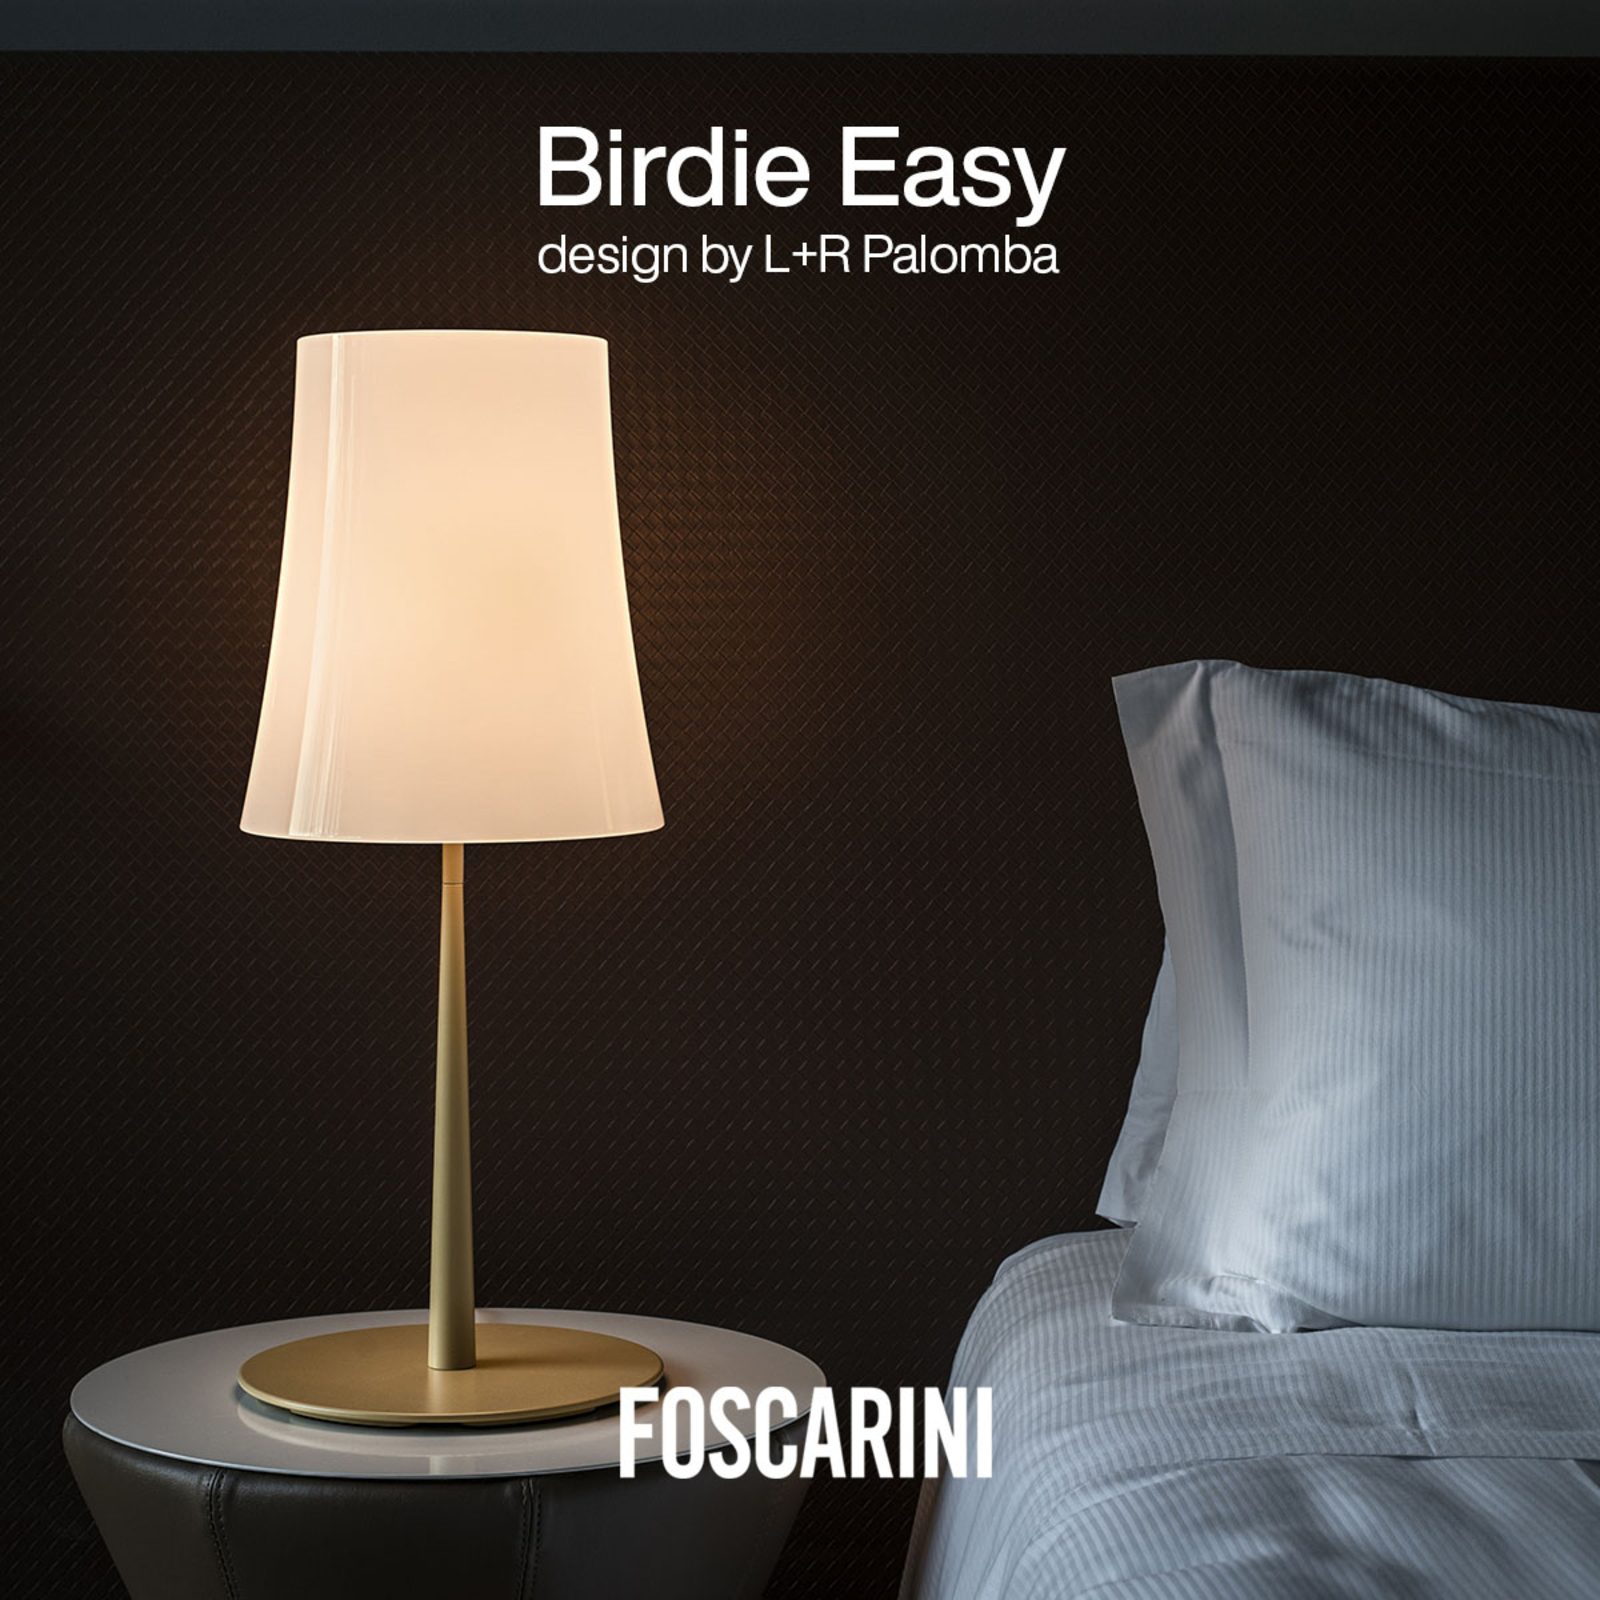 Foscarini Birdie Easy Grande Tischlampe sandgelb